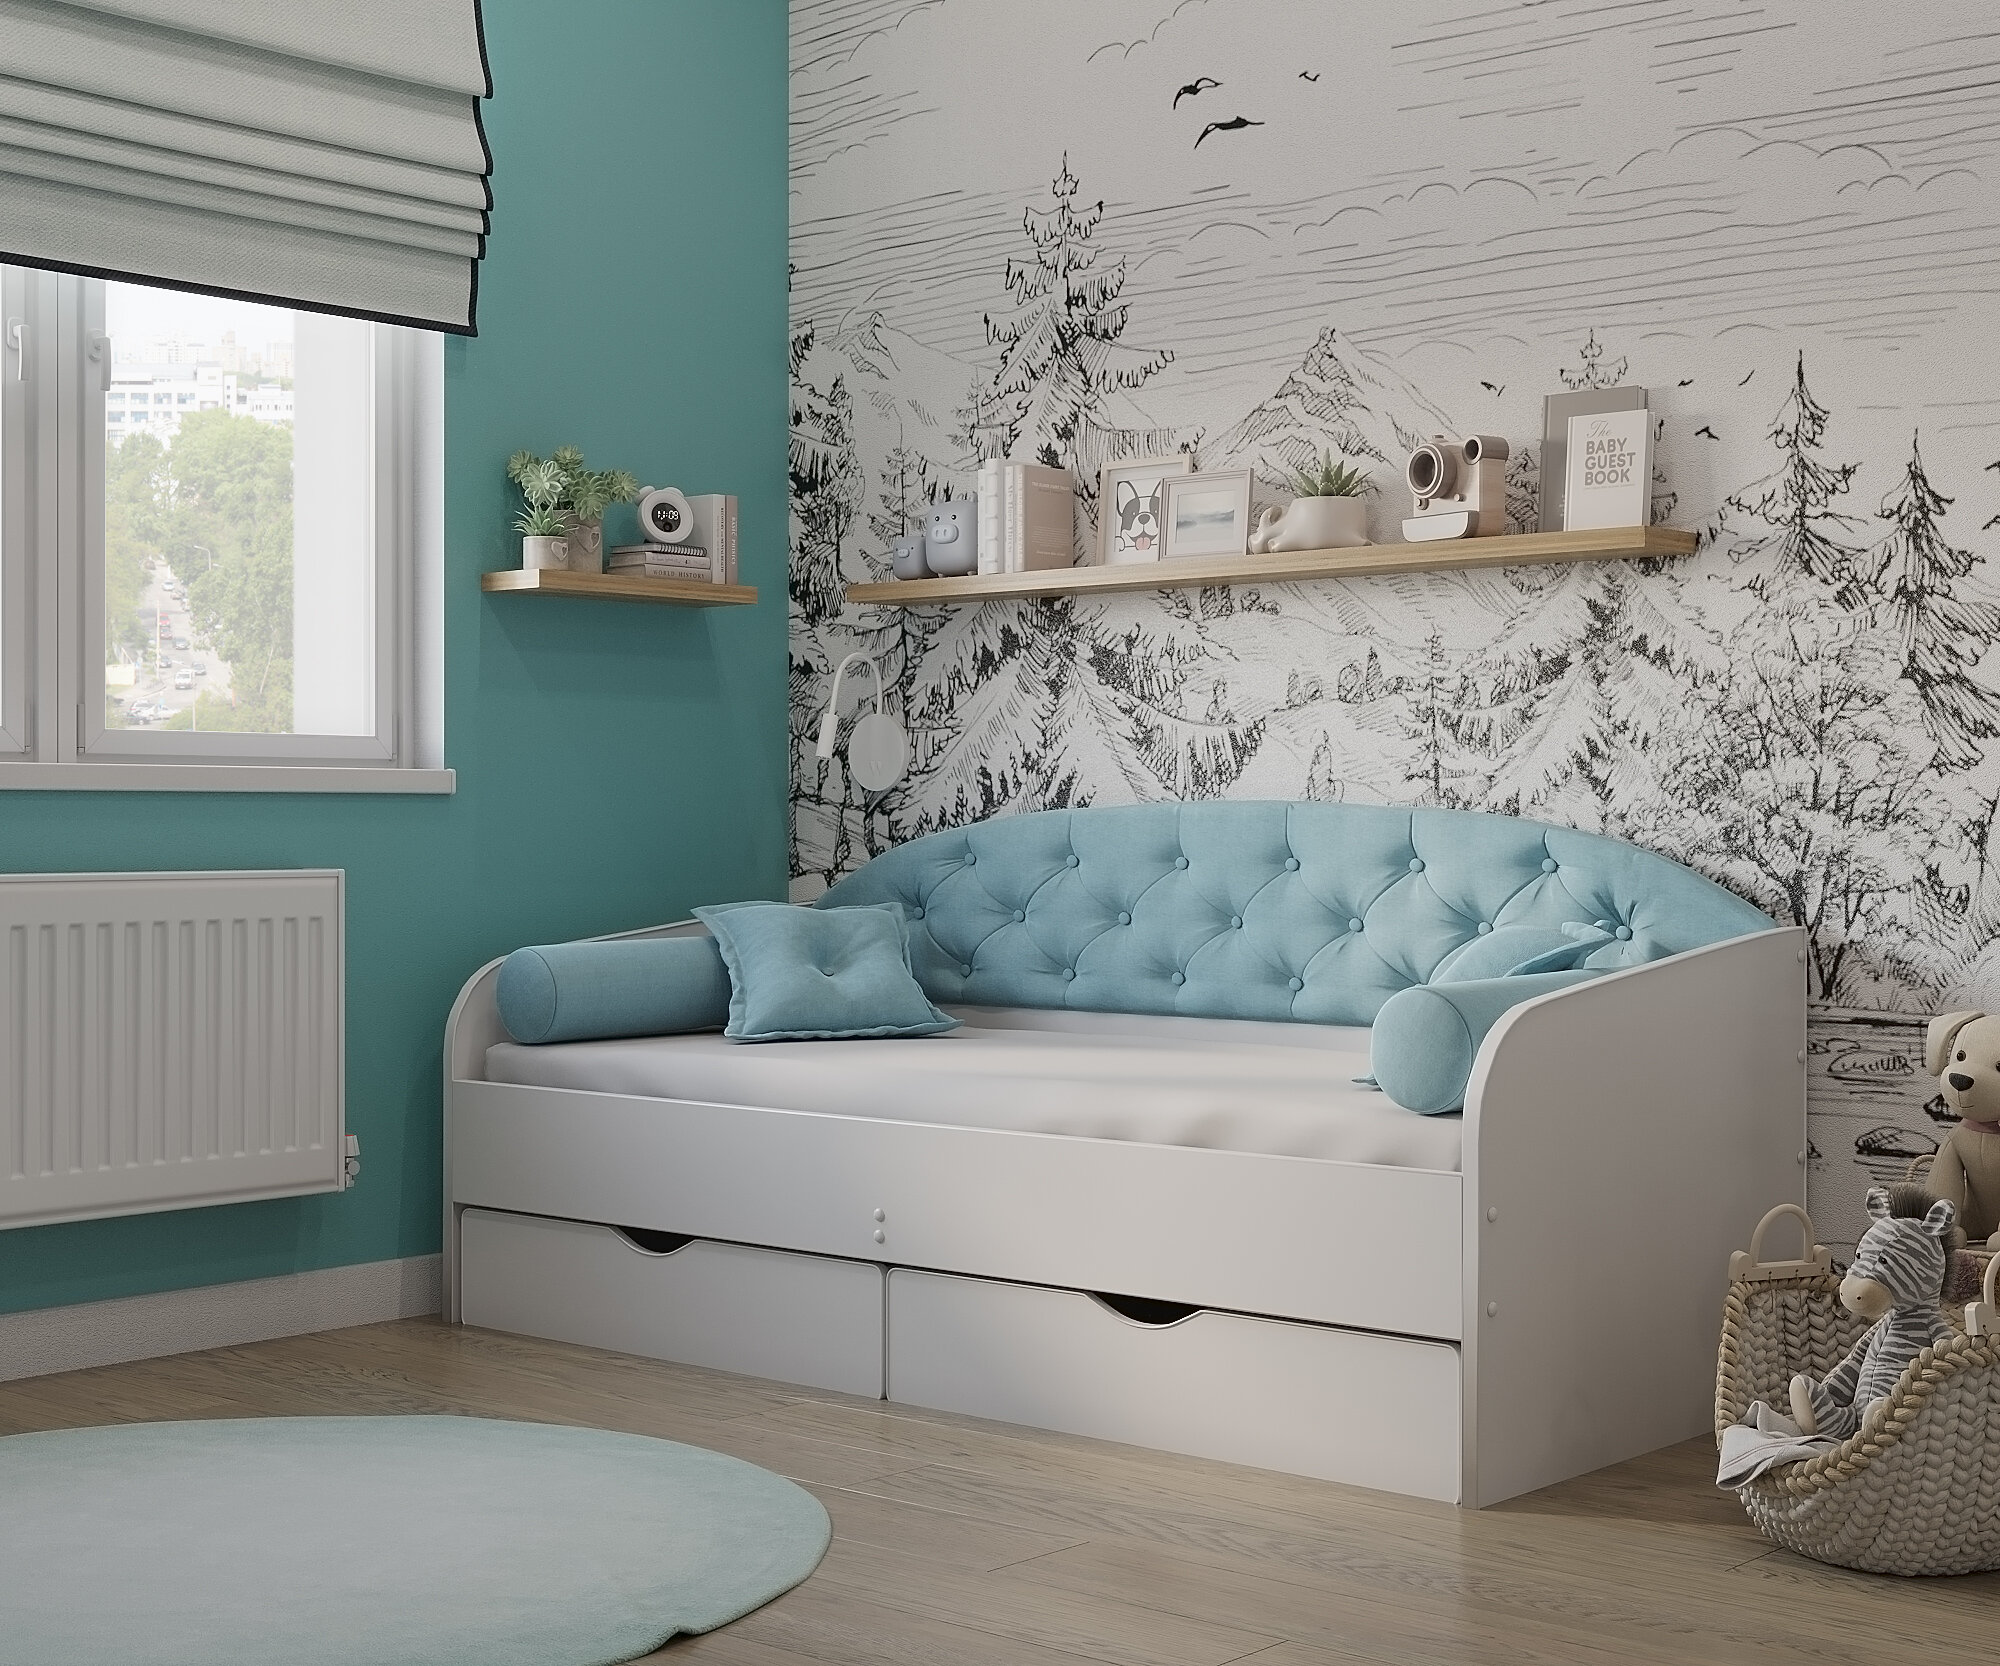 Matrix кровать с мягкой спинкой Sofa 9, 190x80 см. цвет: мята